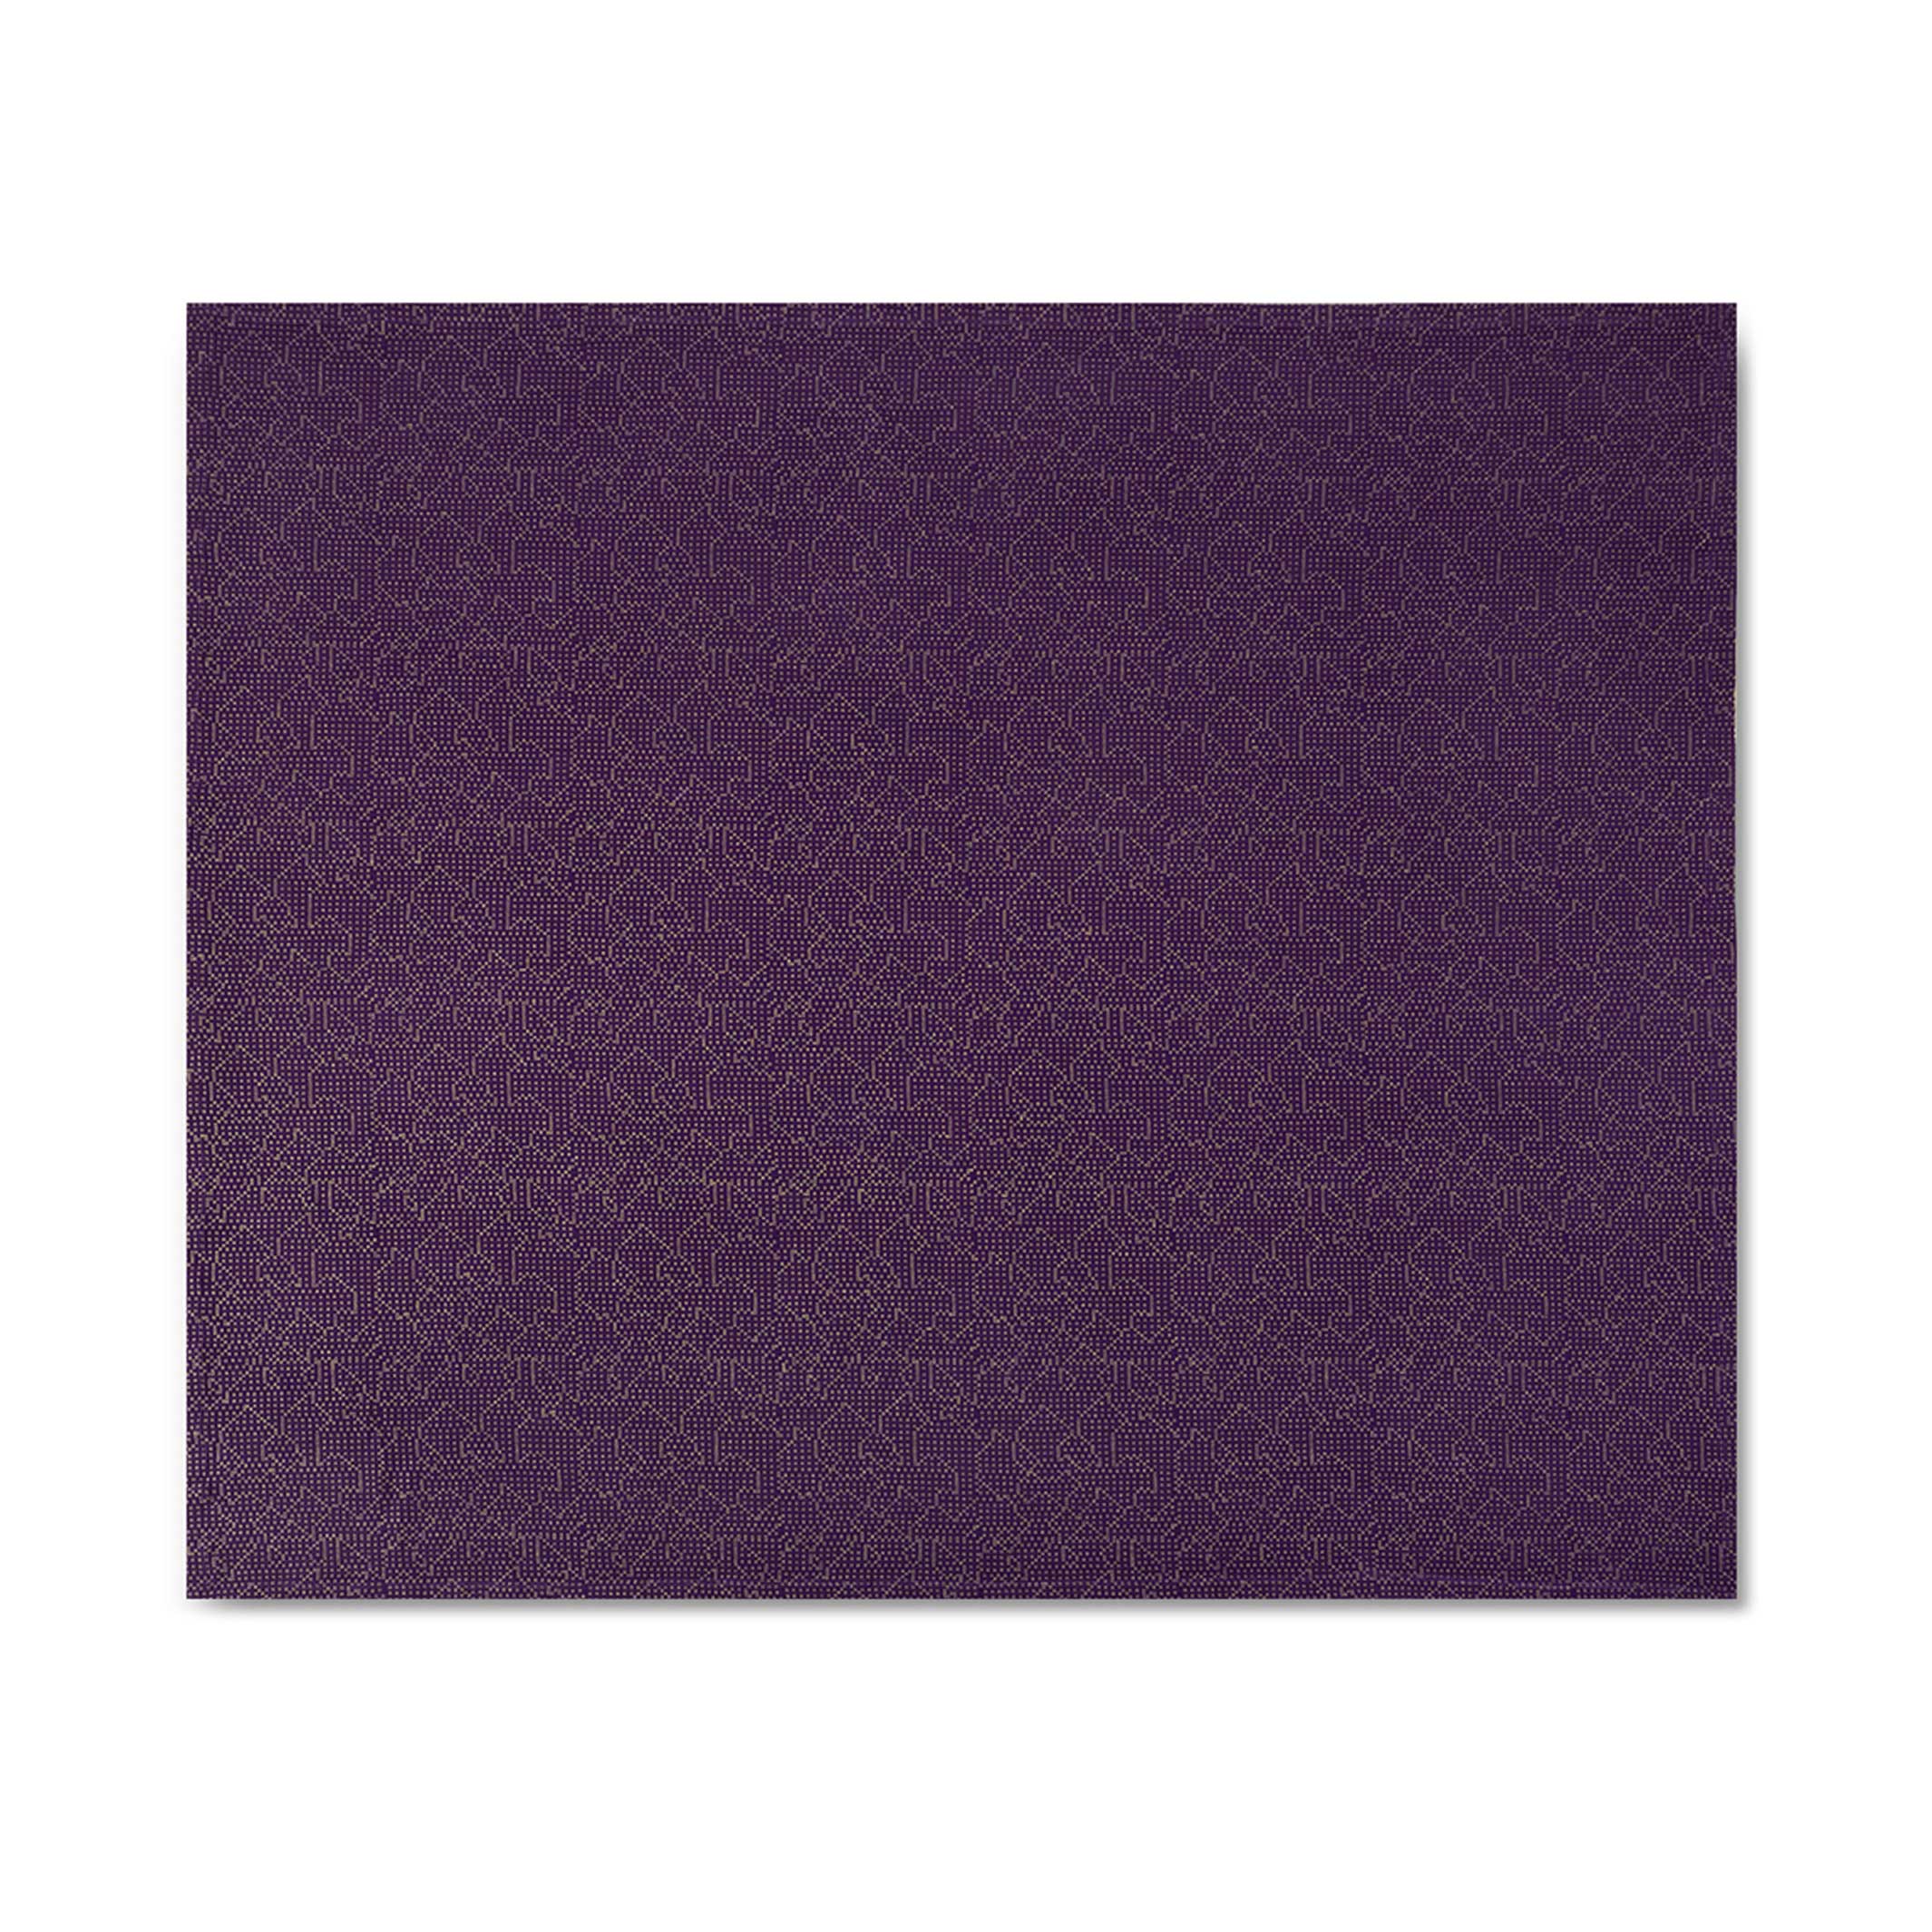 MAPPING BEDSPREAD | lila-farbige TAGES-BETT-DECKE | 235x245 cm | 100% Baumwolle | Cristian Zuzunaga